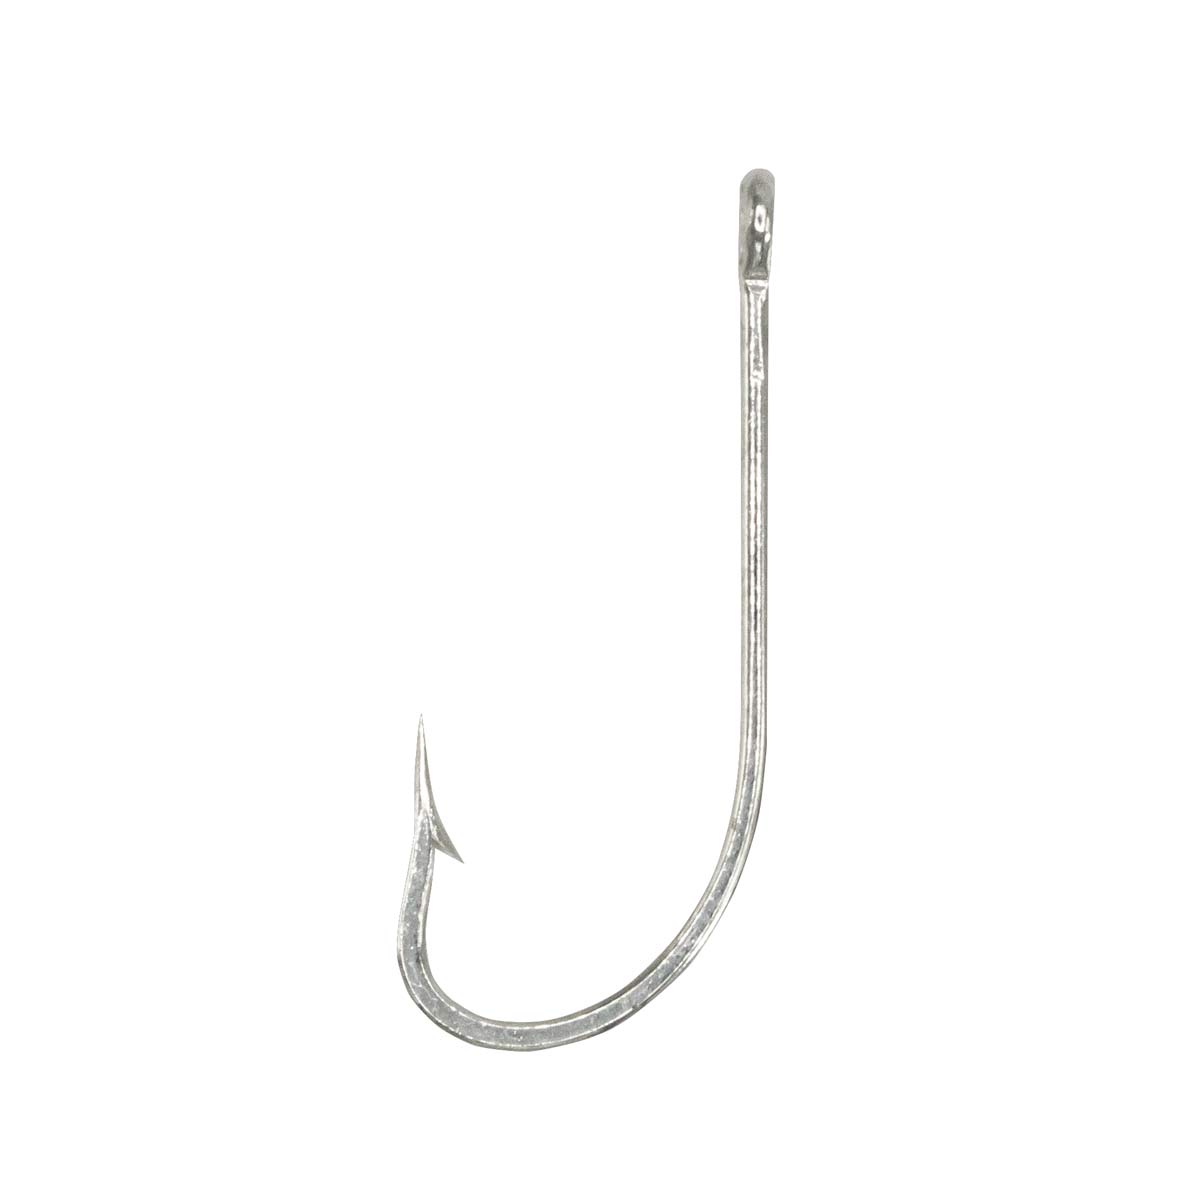 O'Shaughnessy Long Shank Hook – Rite Angler